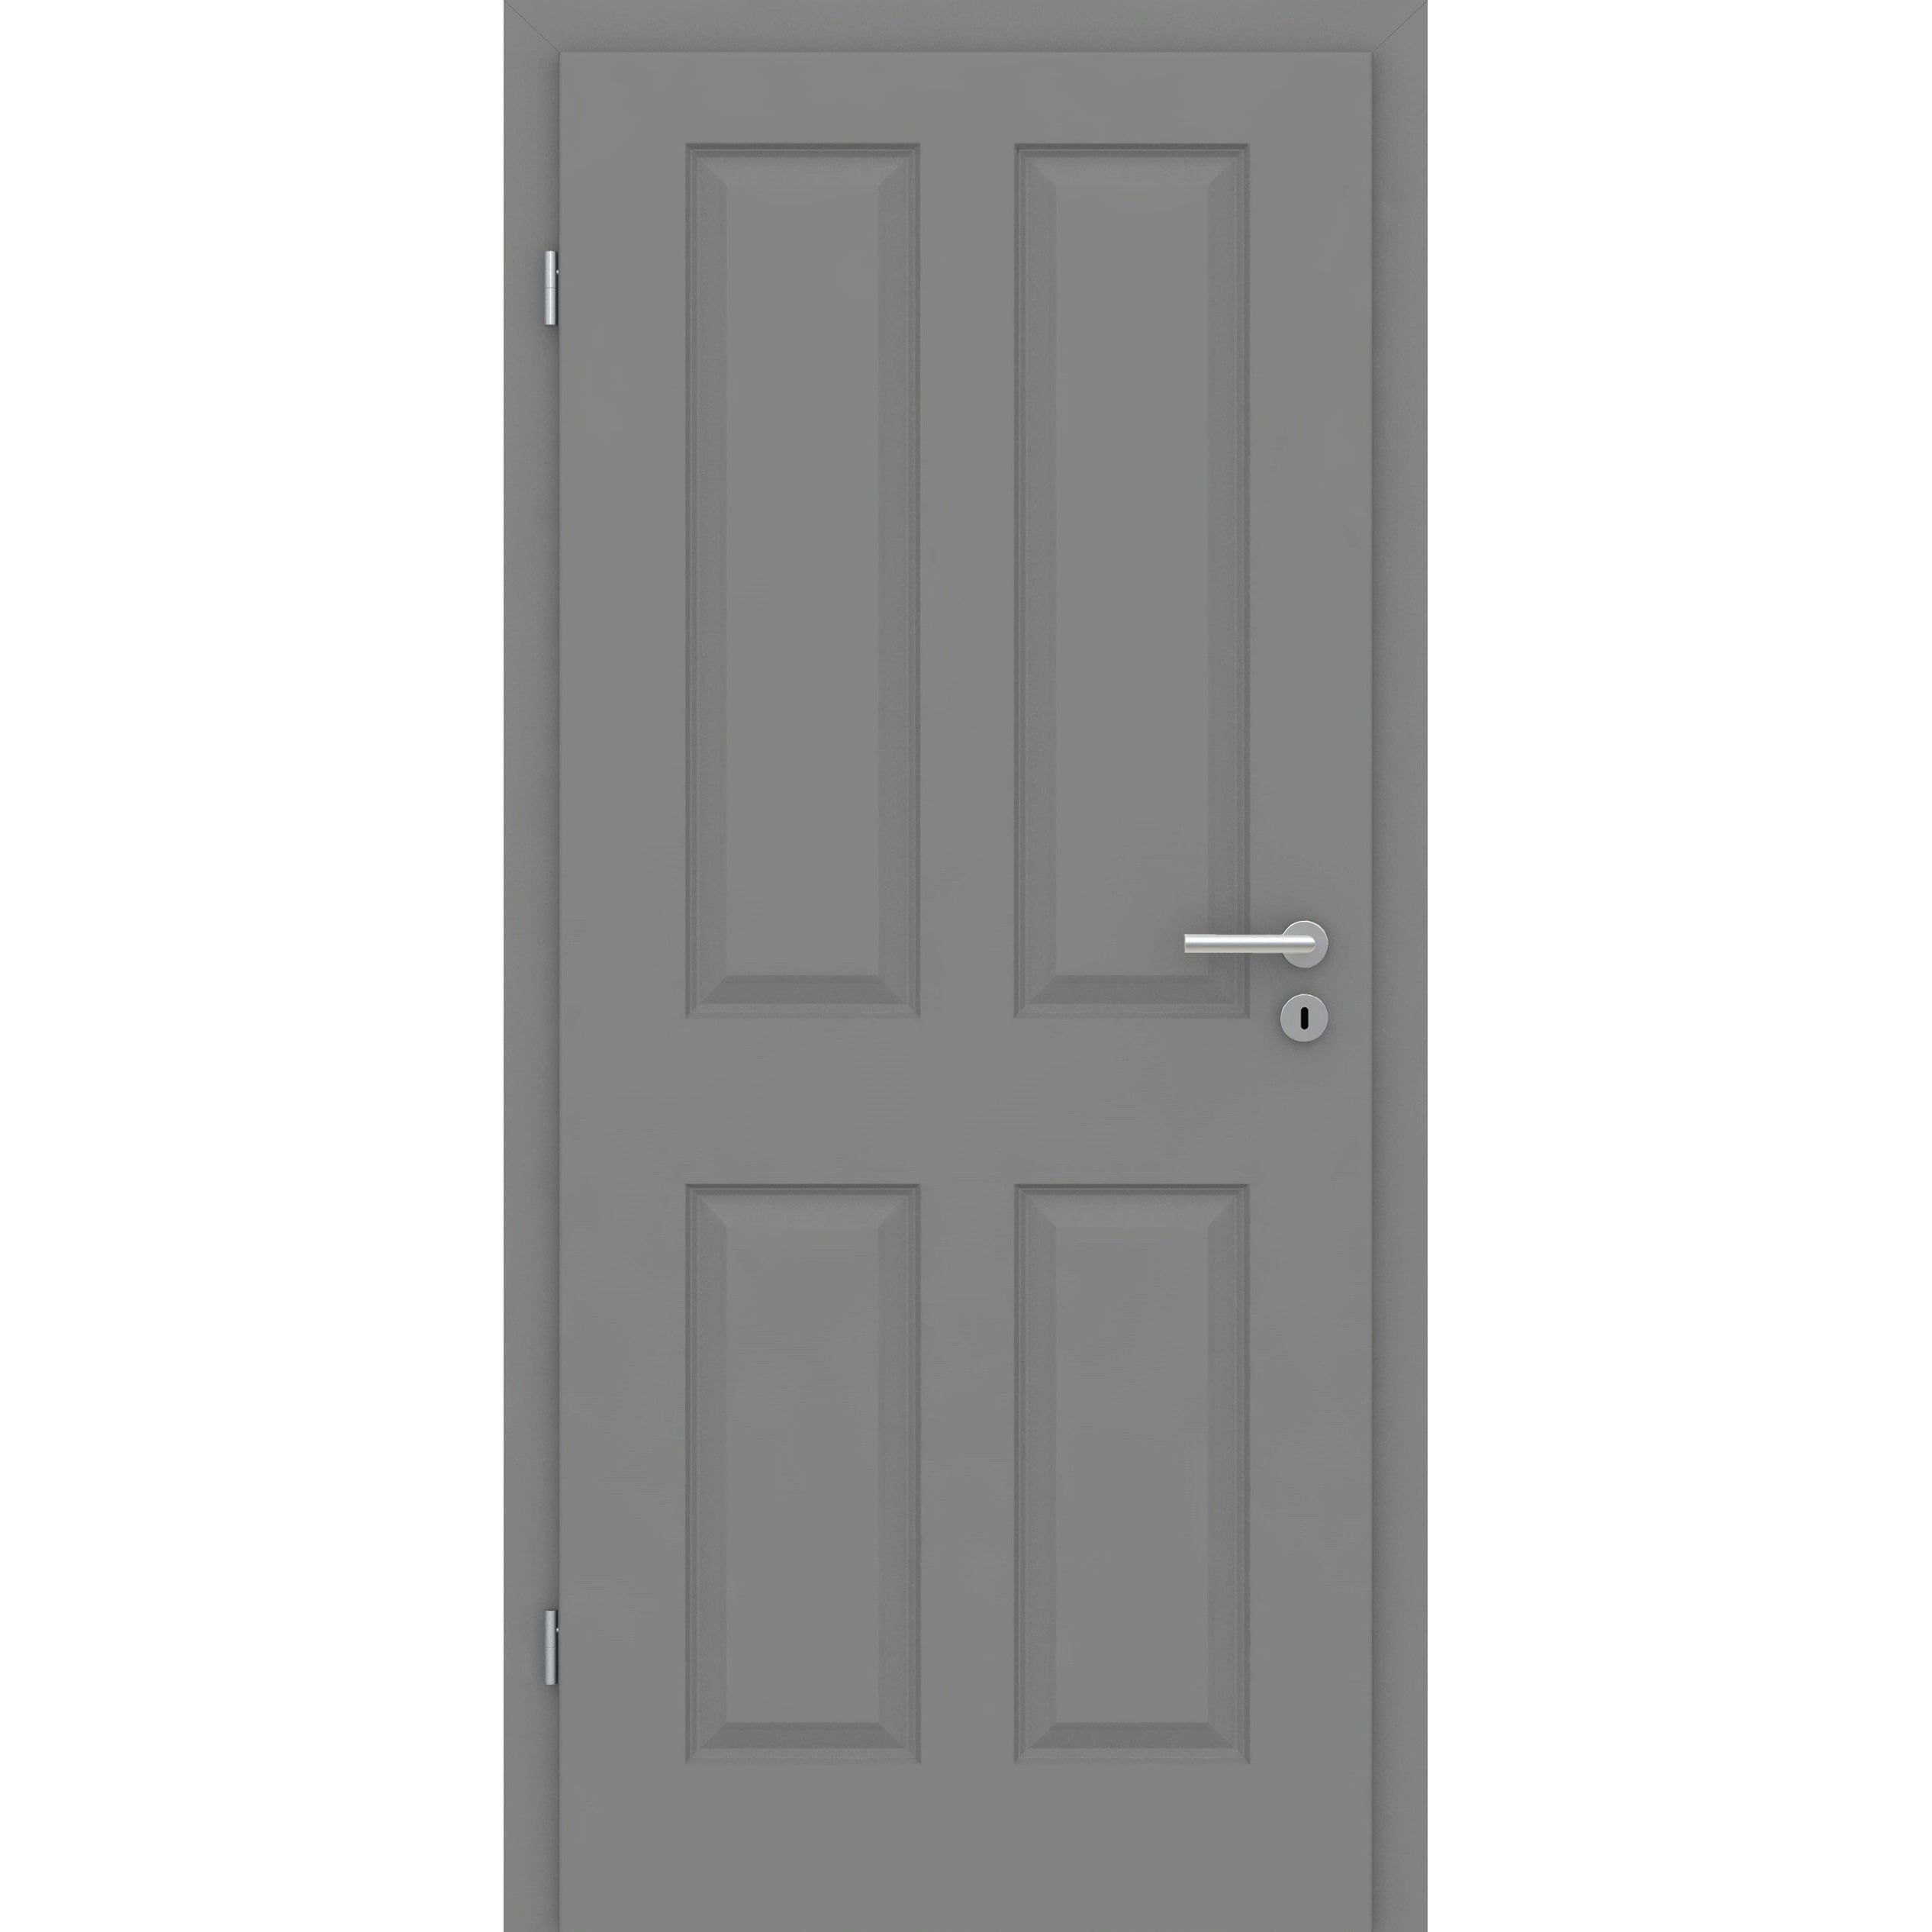 Zimmertür mit Zarge grau 4 Kassetten Designkante - Modell Stiltür K47